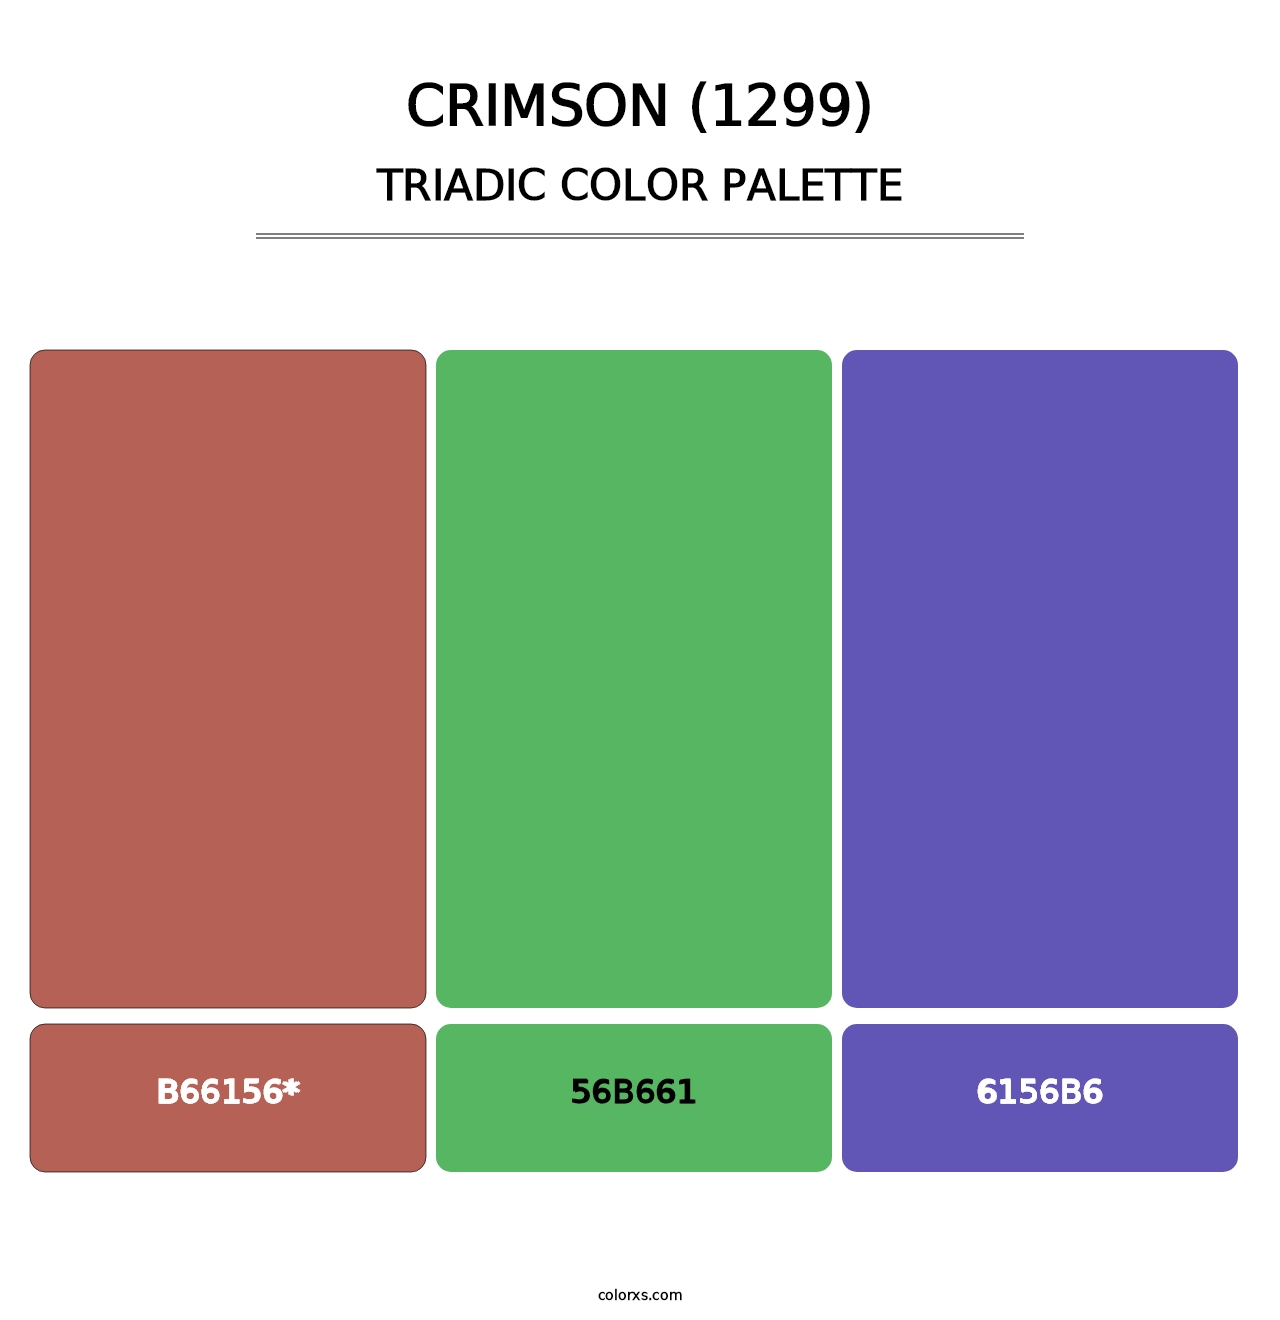 Crimson (1299) - Triadic Color Palette